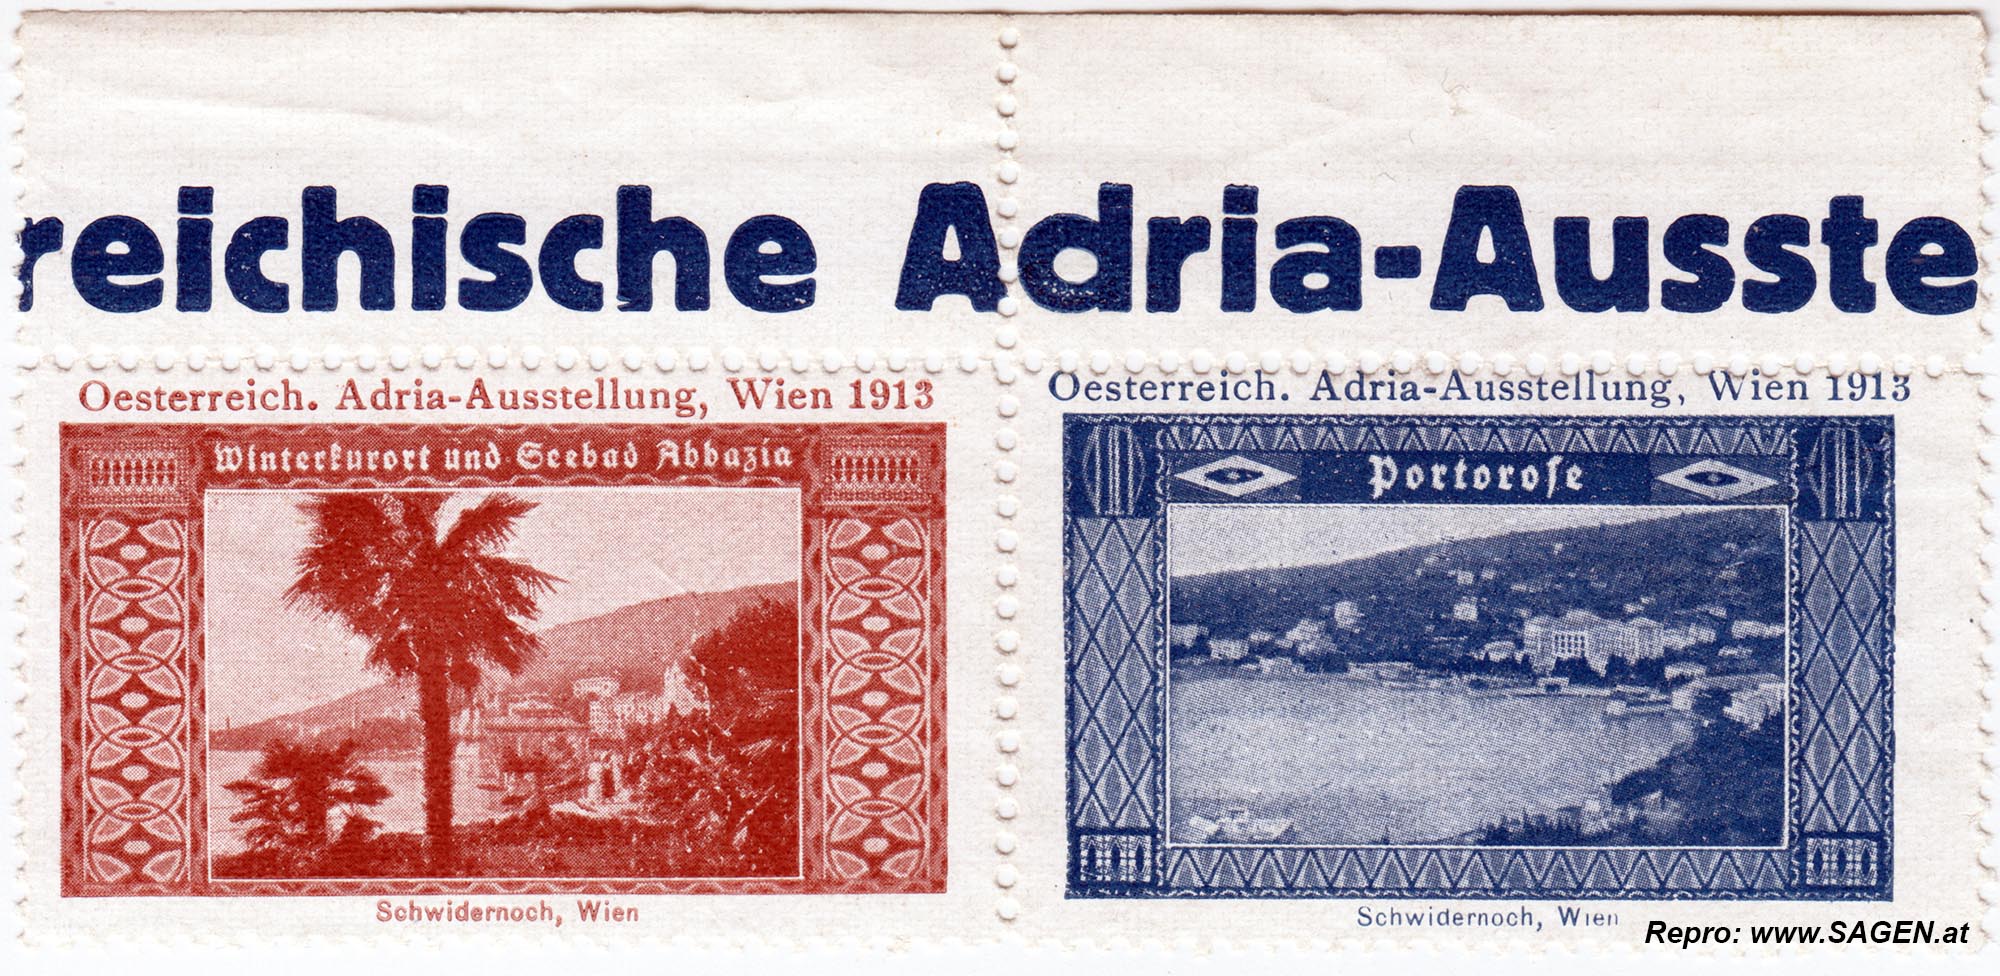 Reklamemarken Österreichische Adria-Ausstellung 1913